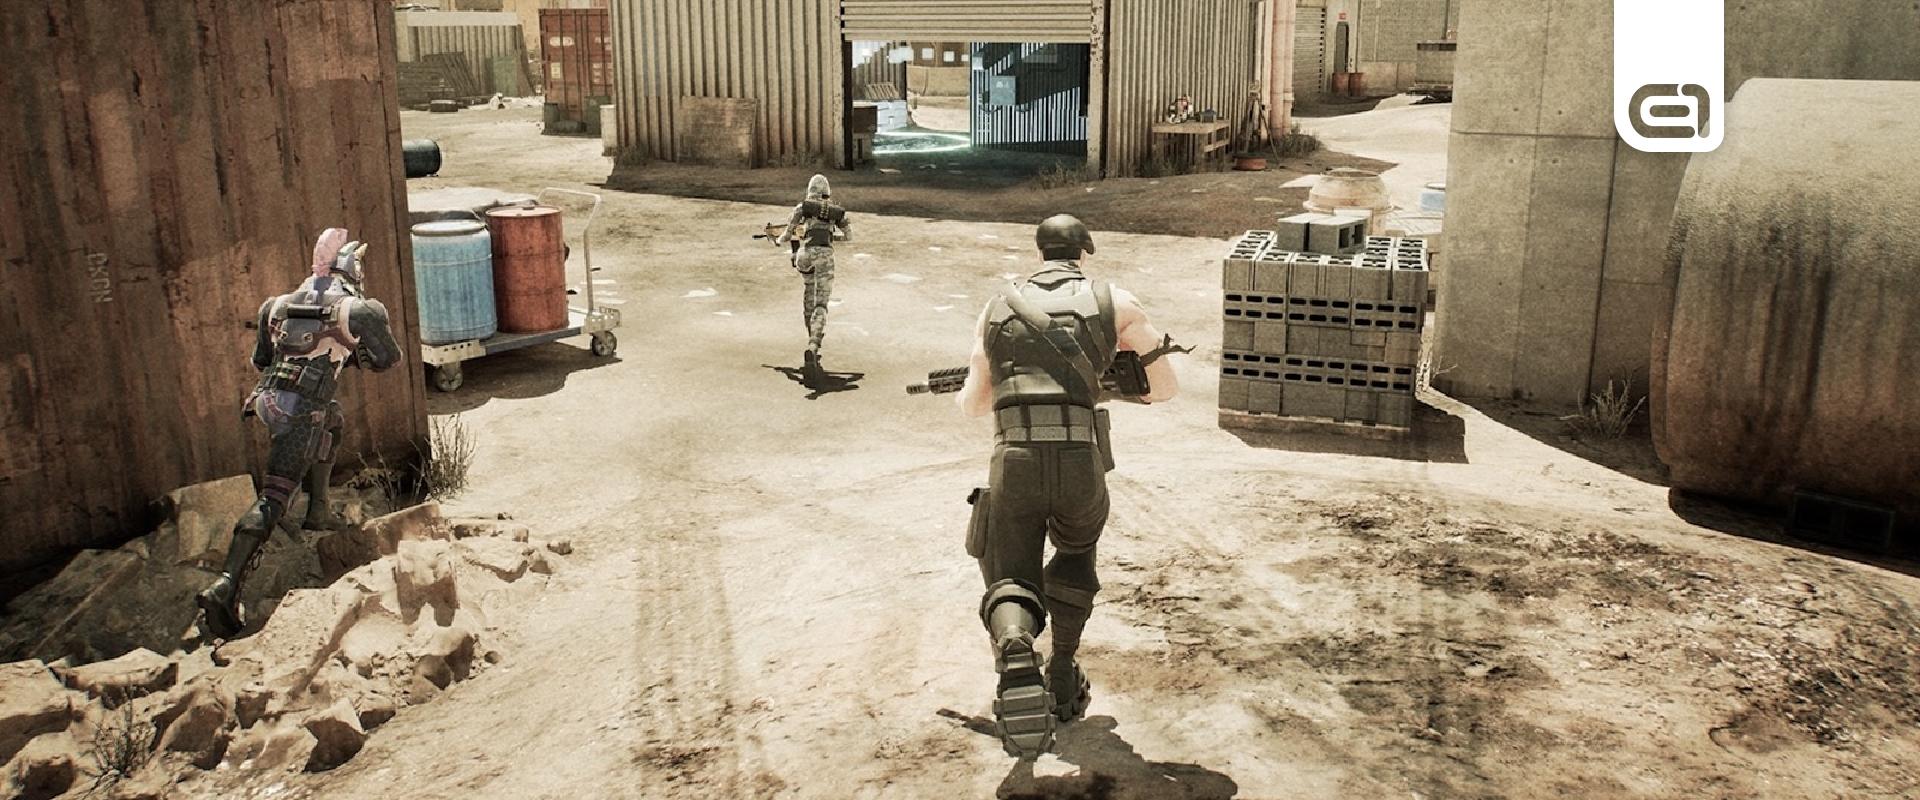 Szerzői jogok megsértése miatt törölték a Call of Duty pályákat a Fortnite Creative-ból